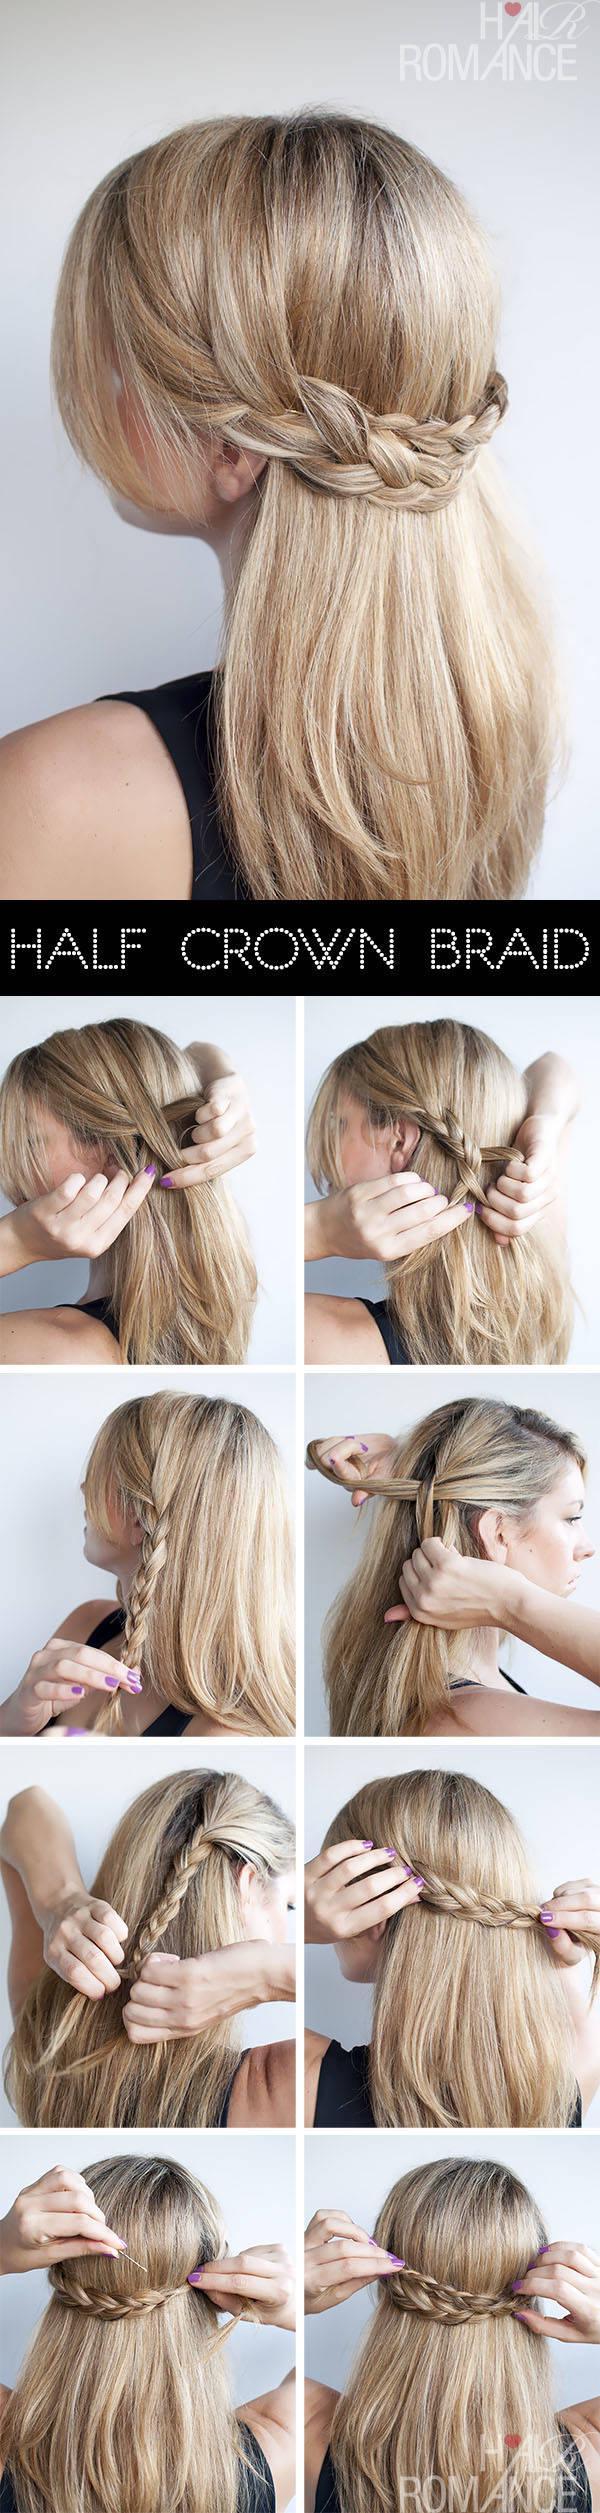 รูปภาพ:http://www.hairromance.com/wp-content/uploads/2013/04/Hair-Romance-hairstyle-tutorial-half-crown-braid.jpg